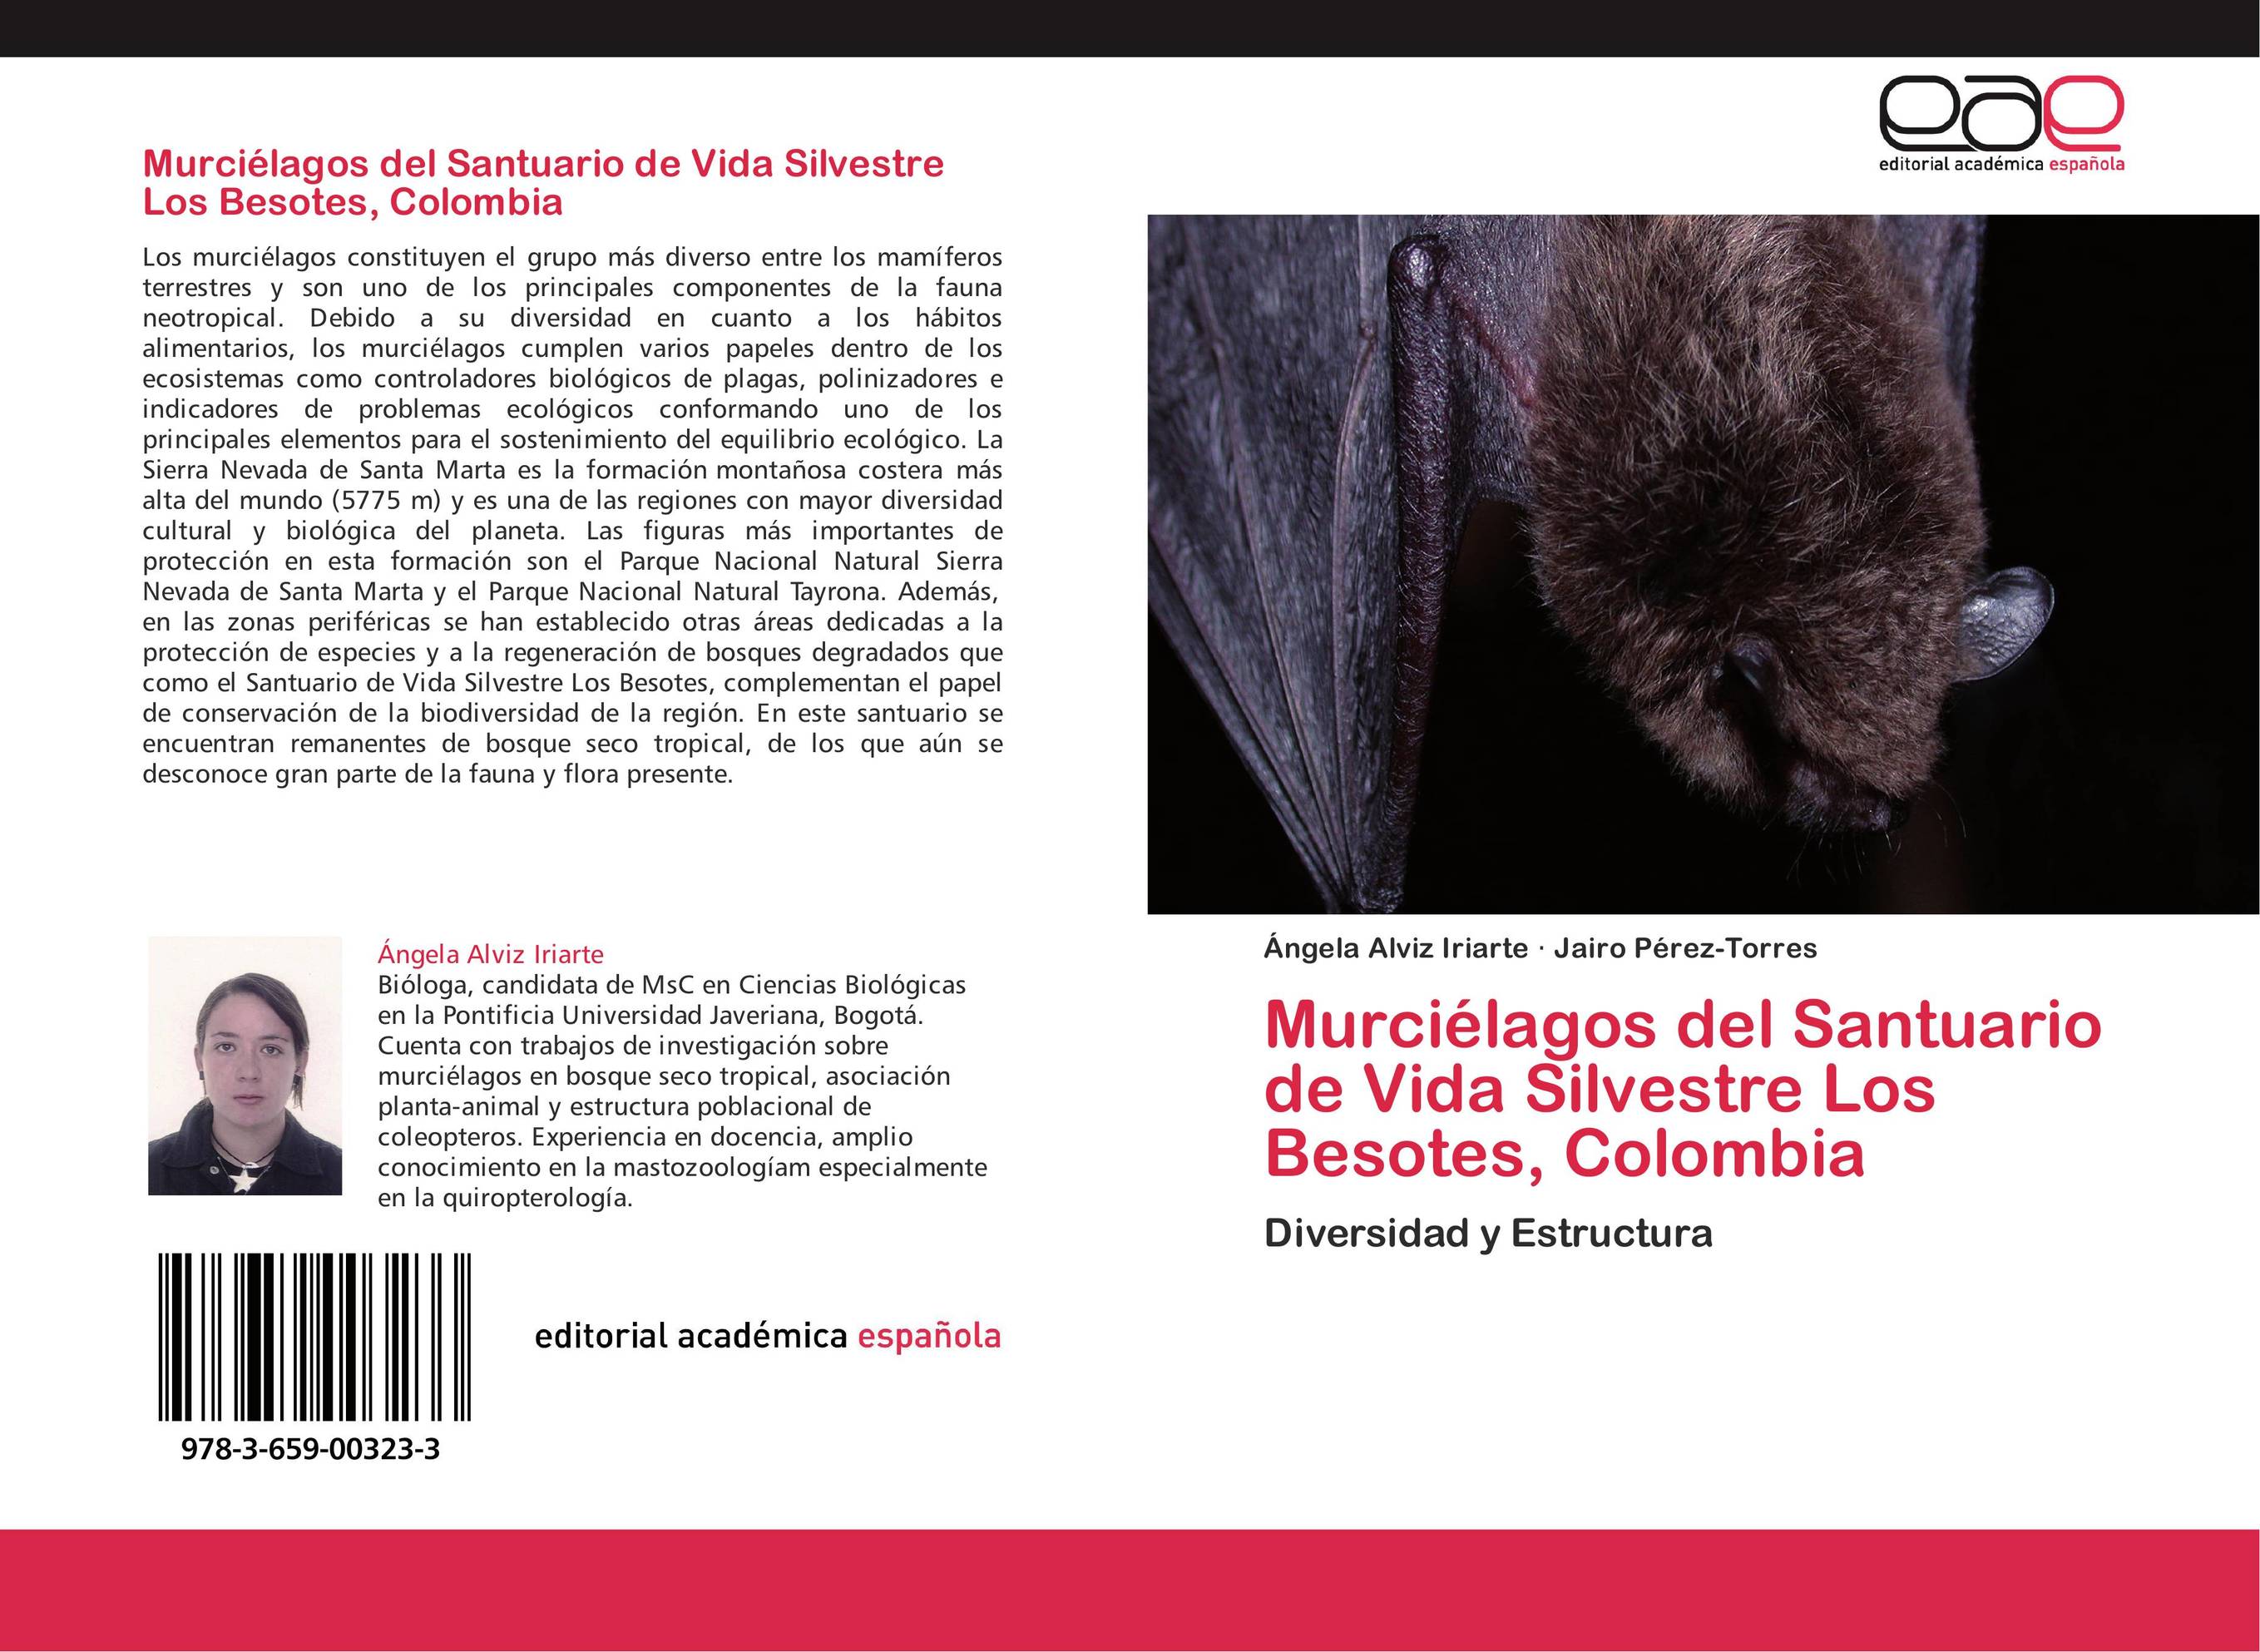 Murciélagos del Santuario de Vida Silvestre Los Besotes, Colombia